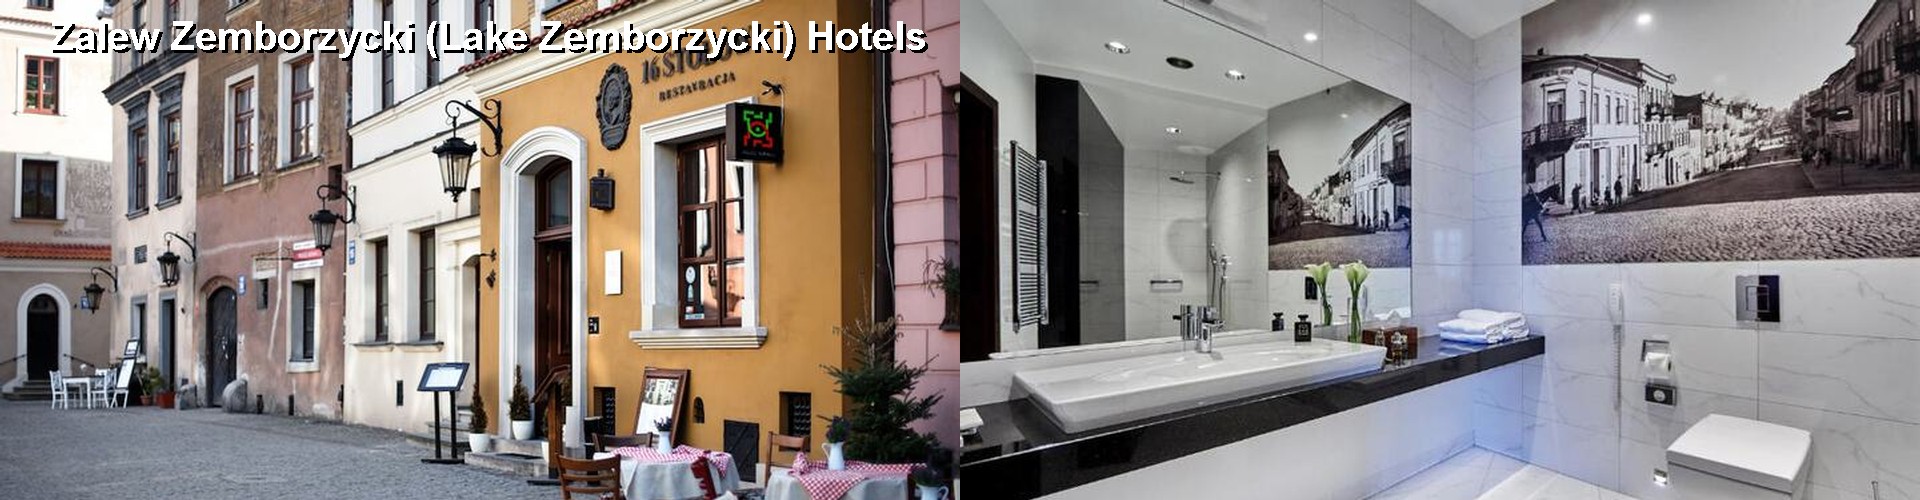 2 Best Hotels near Zalew Zemborzycki (Lake Zemborzycki)